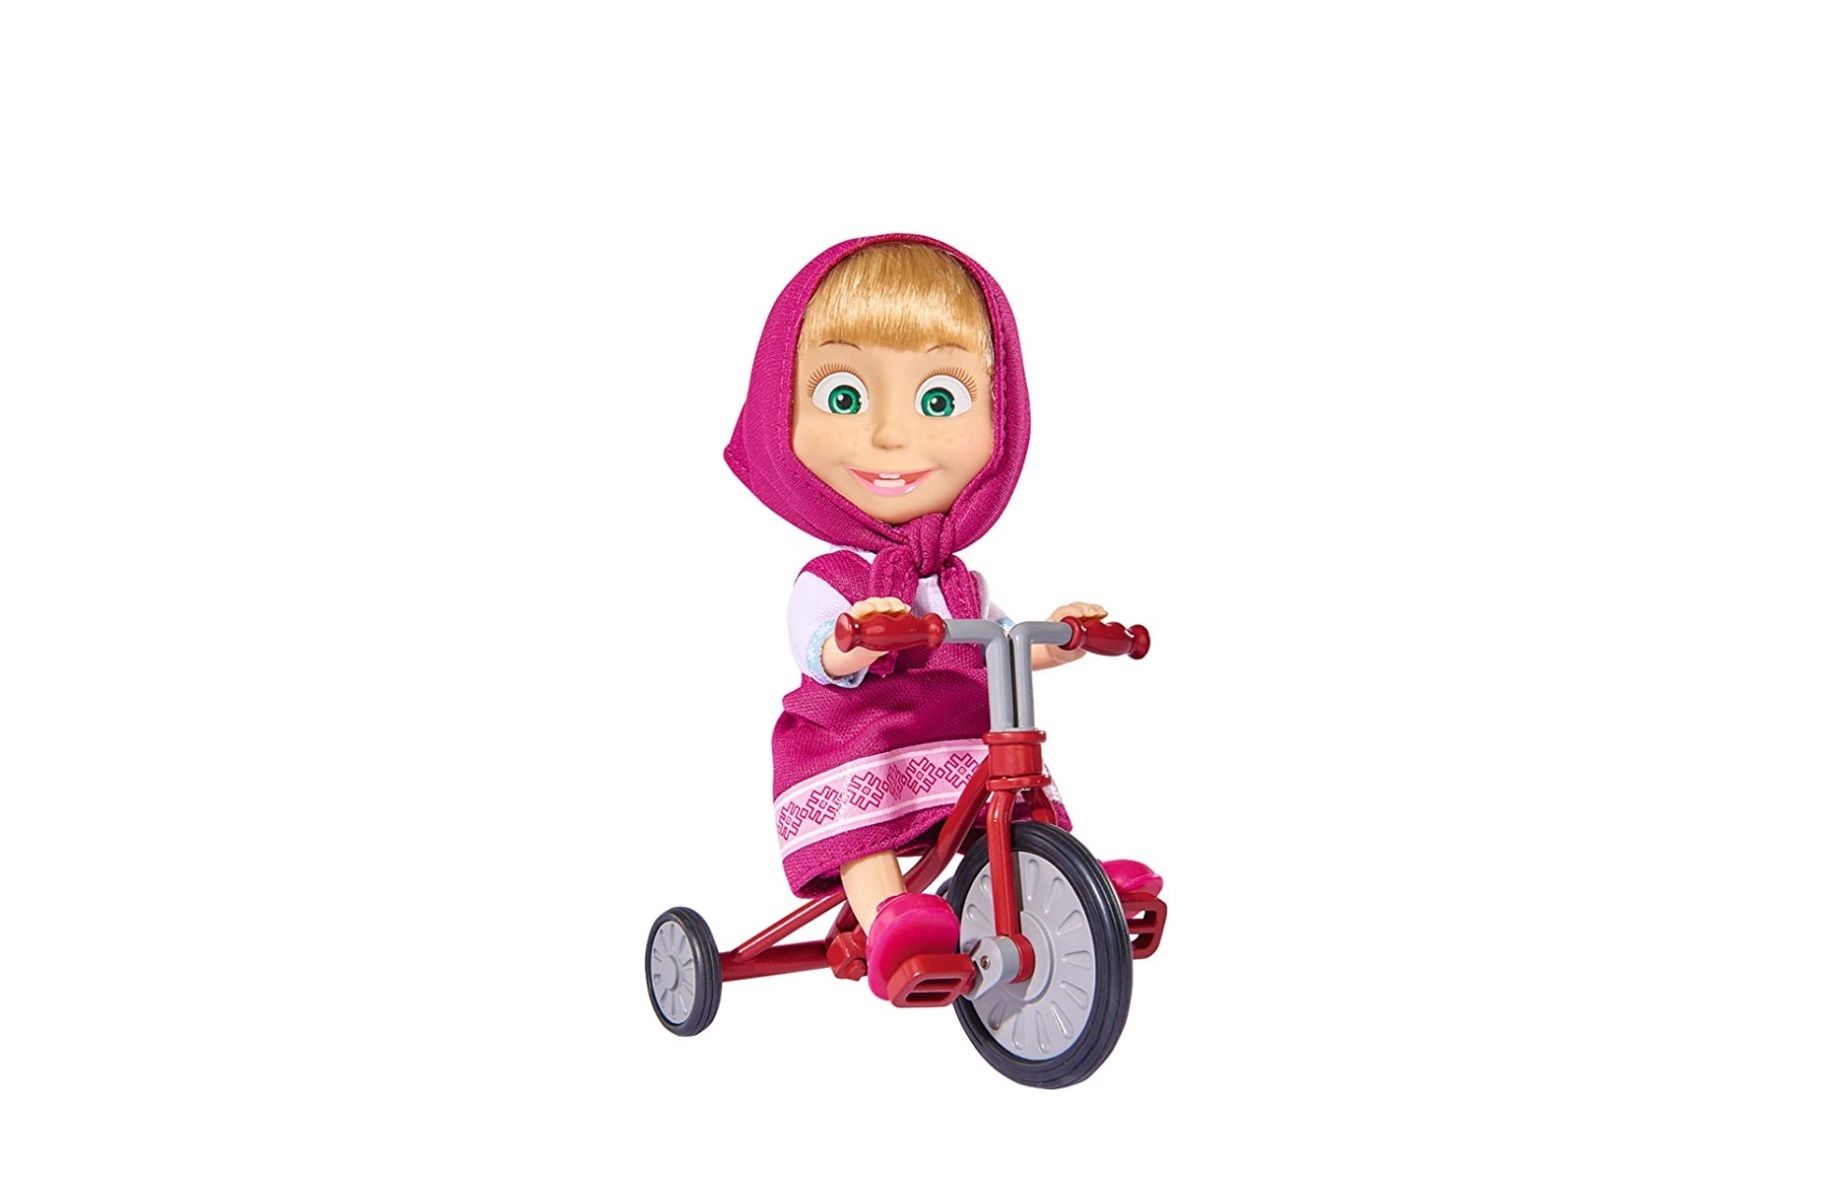 ¡Chollazo! Muñeca Masha con triciclo por sólo 4,80€ (antes 15,99€)